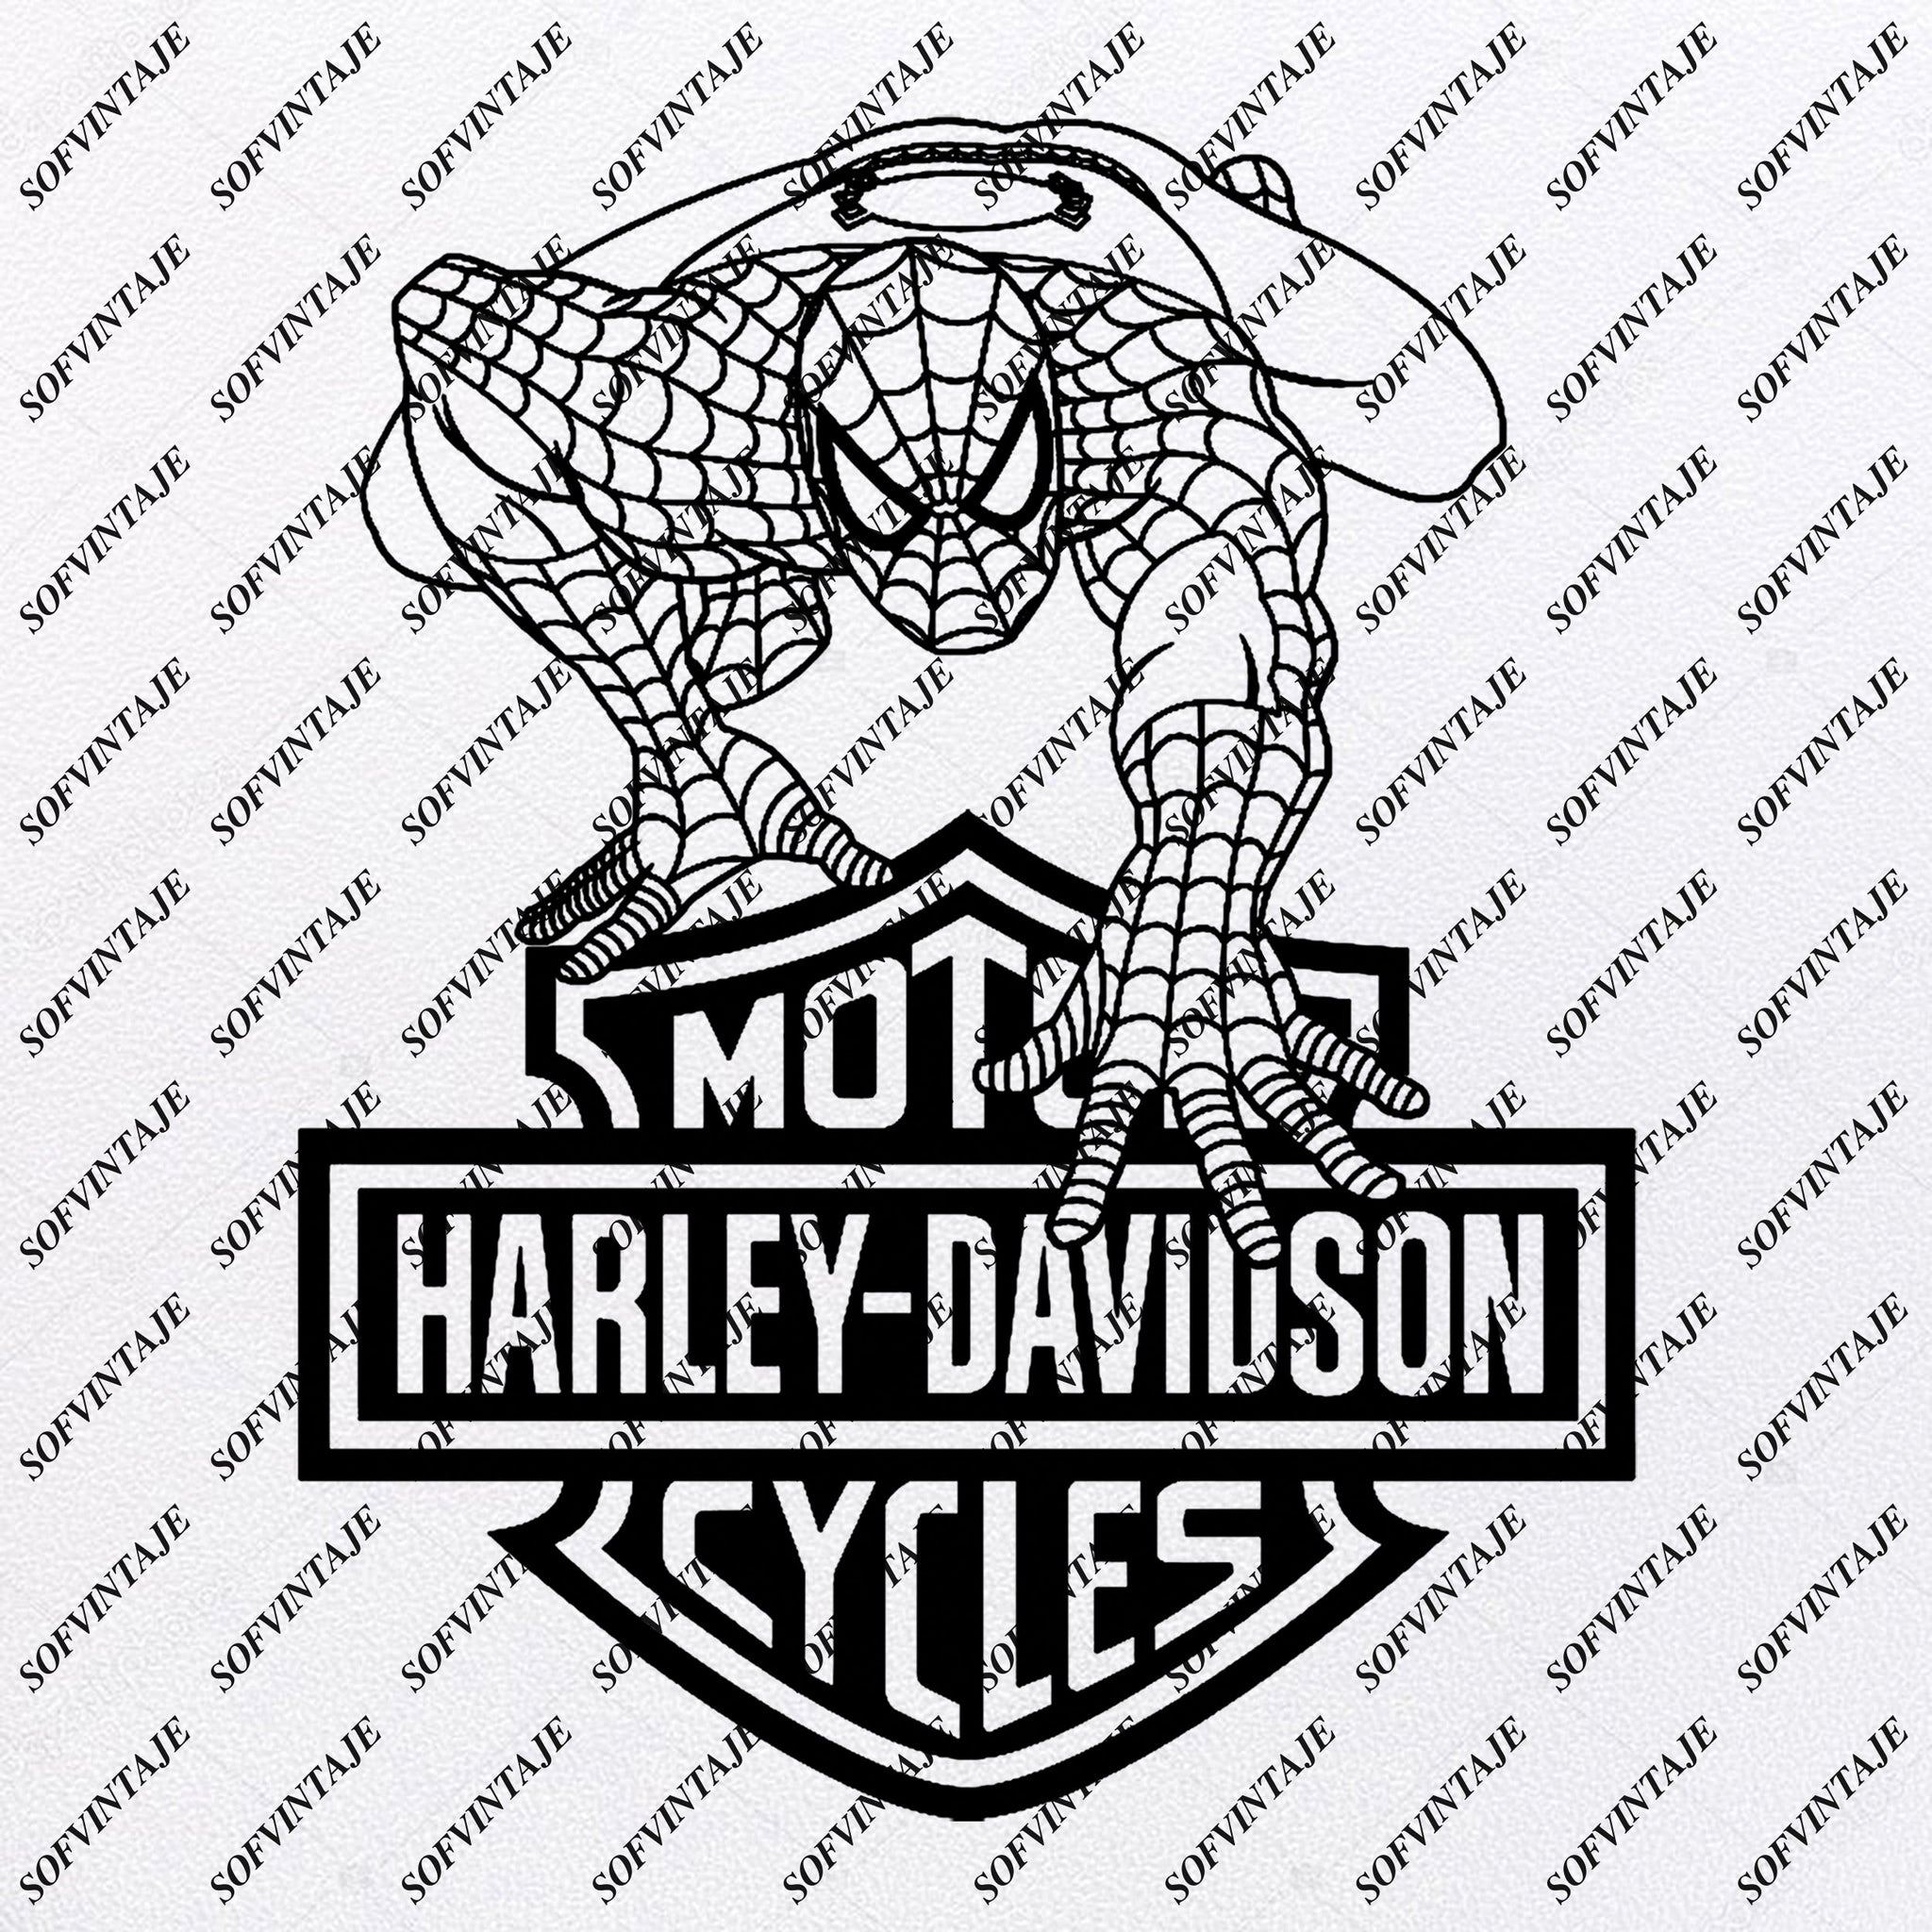 Download Spiderman Harley Davidson Spiderman Svg File Spiderman Harley Sofvintaje